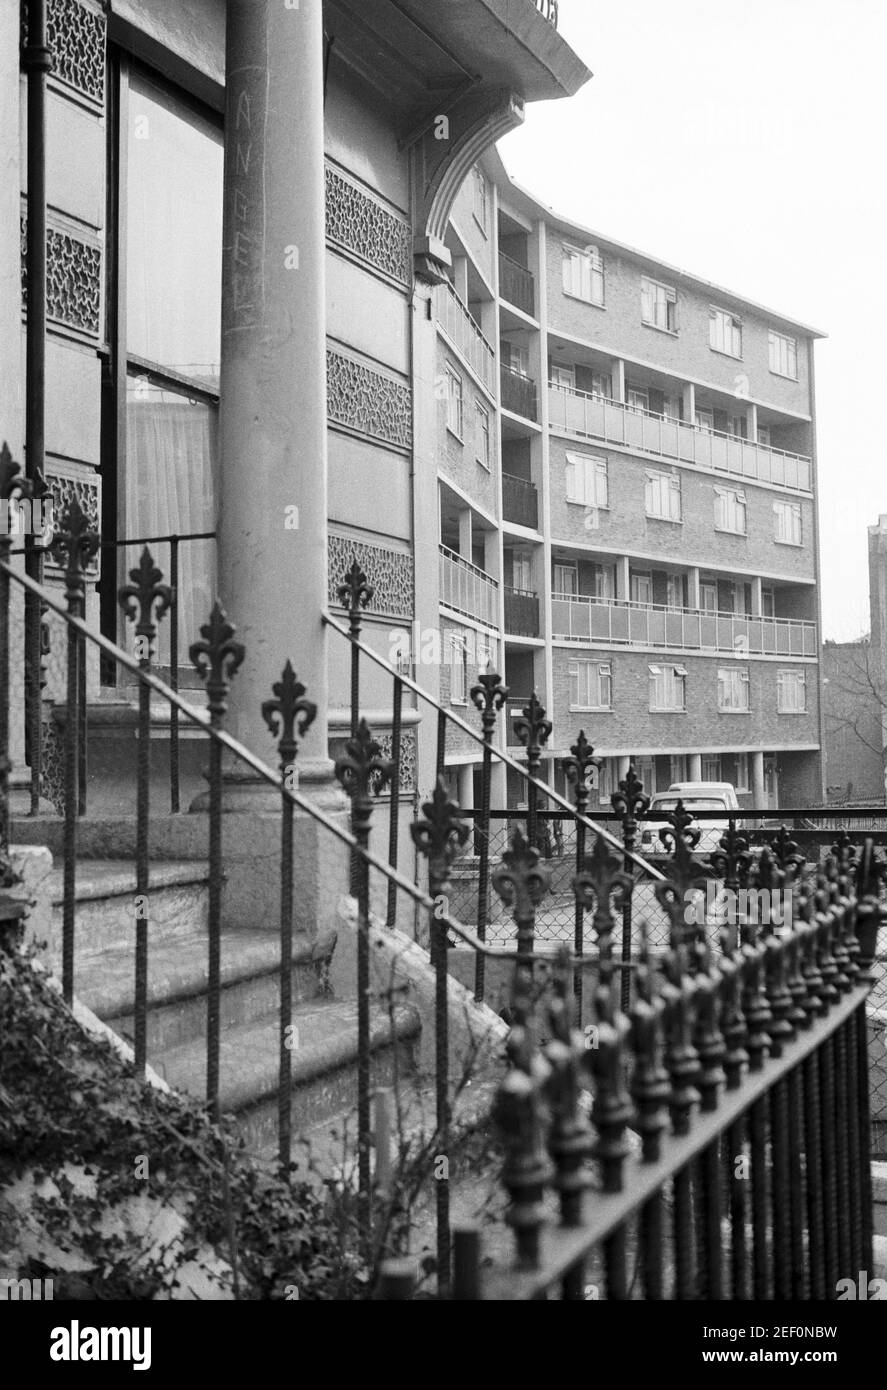 Royaume-Uni, West London, Notting Hill, 1973. Les grandes maisons de quatre étages en ruine et en ruine commencent à être restaurées et redécorées. No.227 Westbourne Park Road & Modern bloc d'appartements de l'autre côté de Powis Gardens. « ANGEL » Graffiti sur le pilier de la maison. Banque D'Images